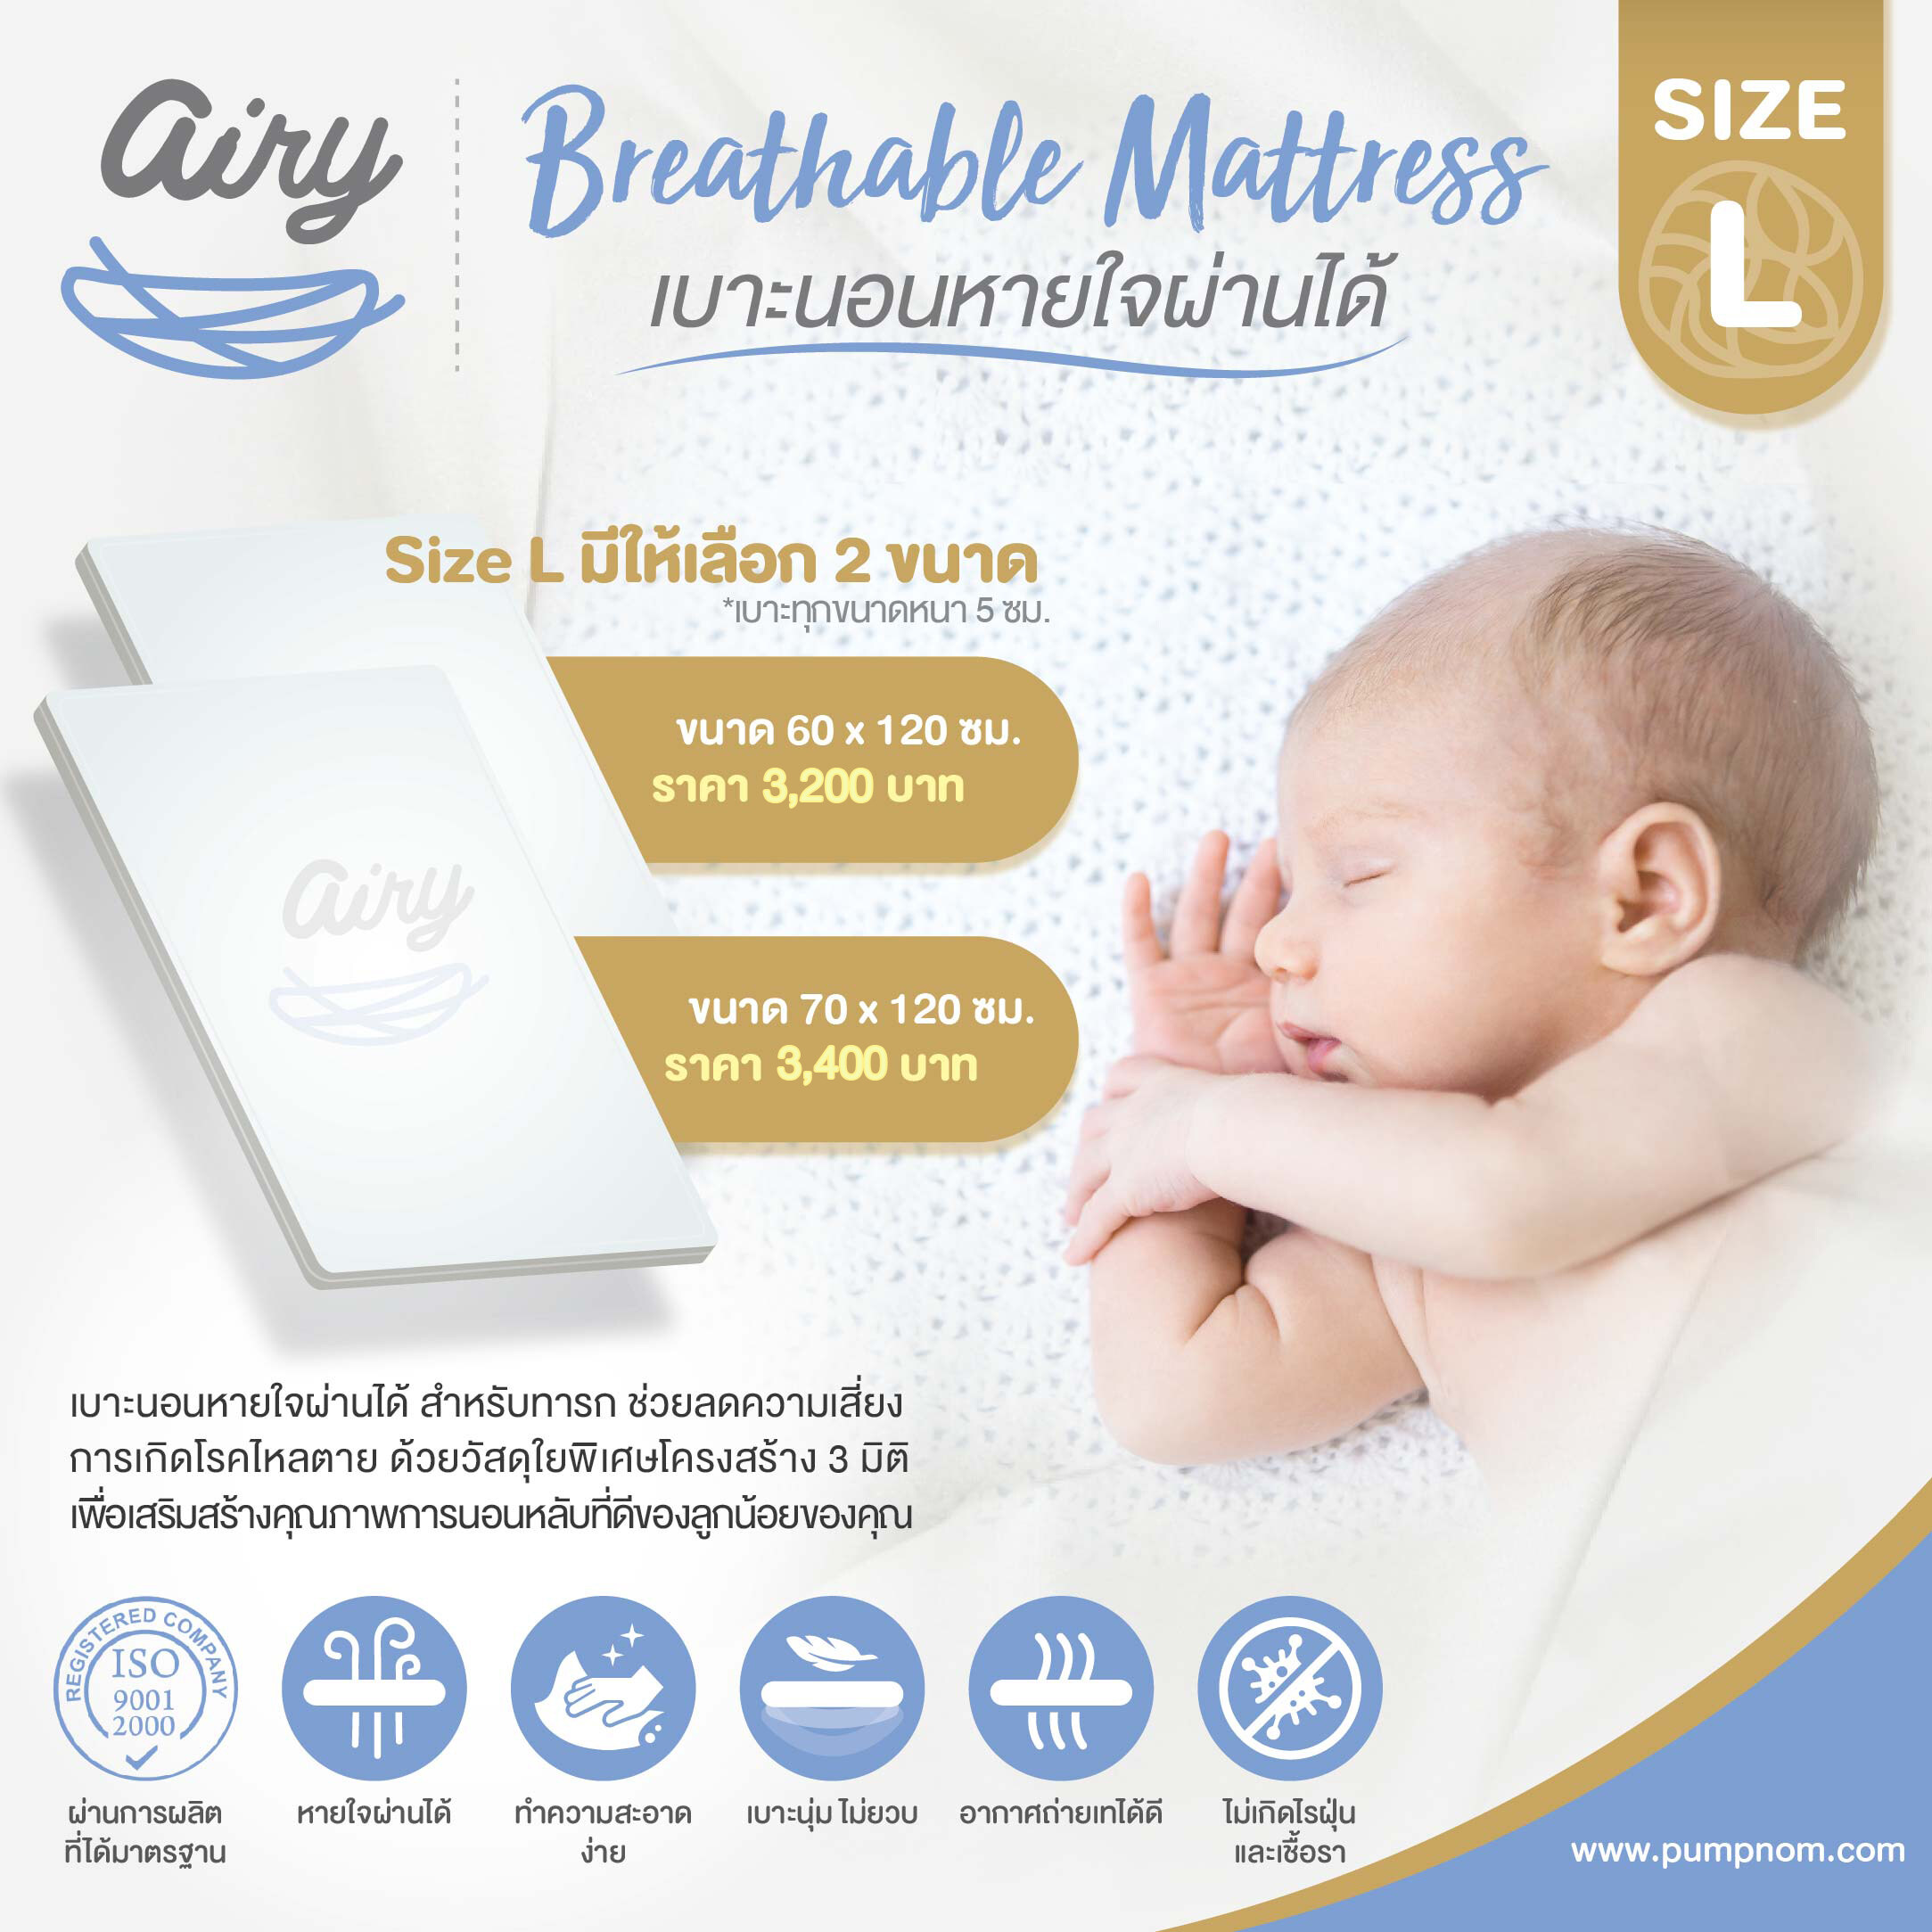 ซื้อที่ไหน AIRY (แอร์รี่) Breathable Matress (size L) เบาะนอนสำหรับน้องแรกเกิด หายใจผ่านได้ ไม่เกิดไรฝุ่นและเชื้อรา